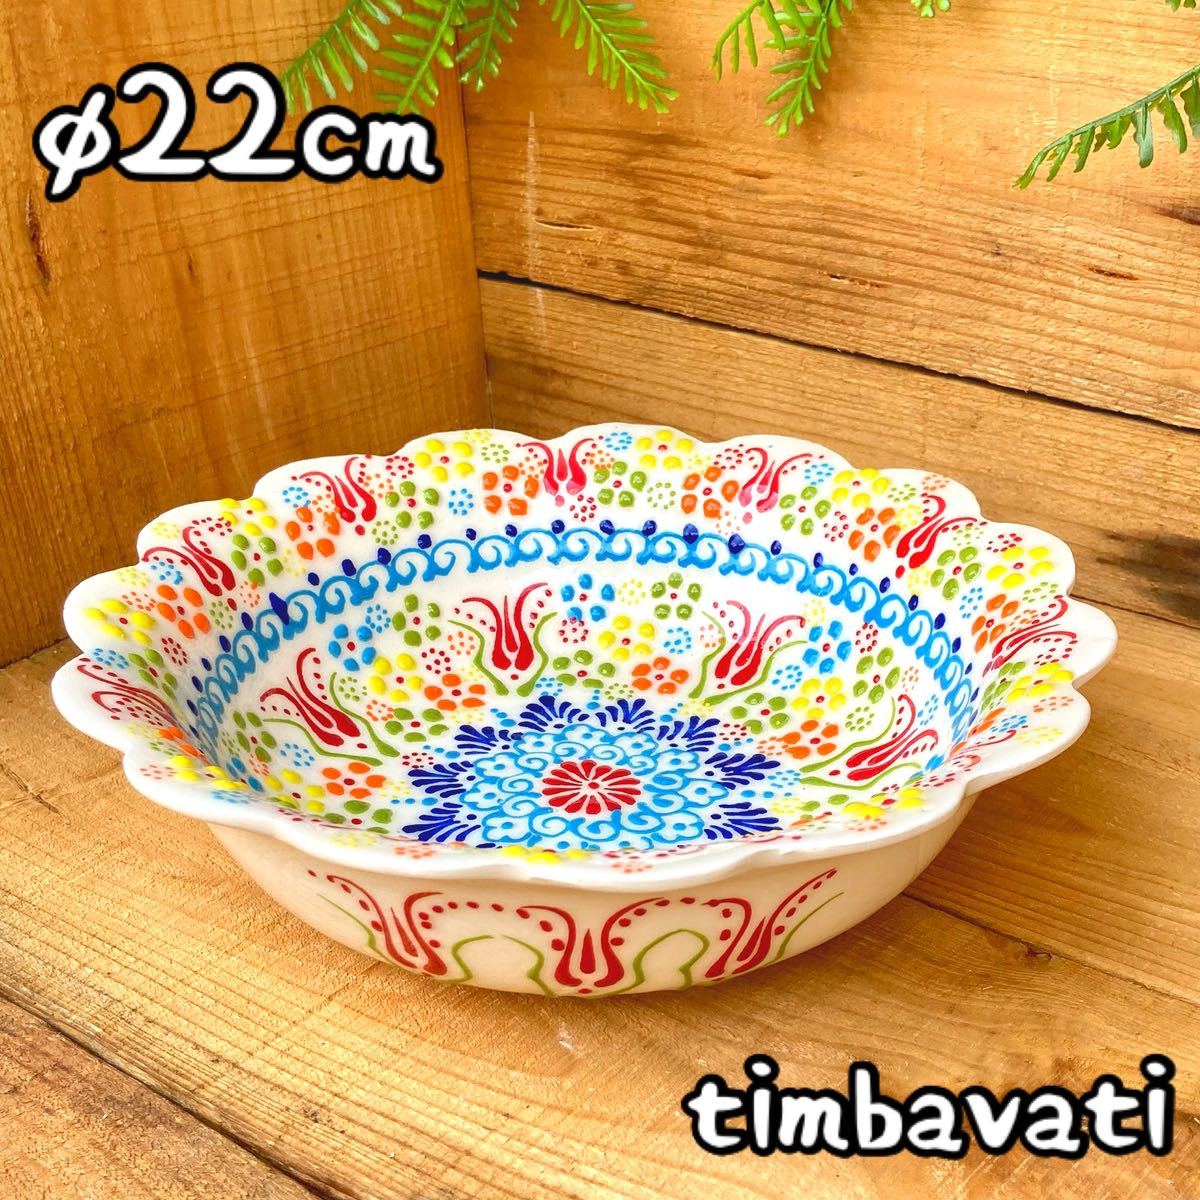 22 cm ☆ Nuevo ☆ Plato de tazón de cerámica turca * Blanco * Cerámica Kyutahya hecha a mano [Envío gratis con condiciones] 096, vajilla occidental, bol, otros